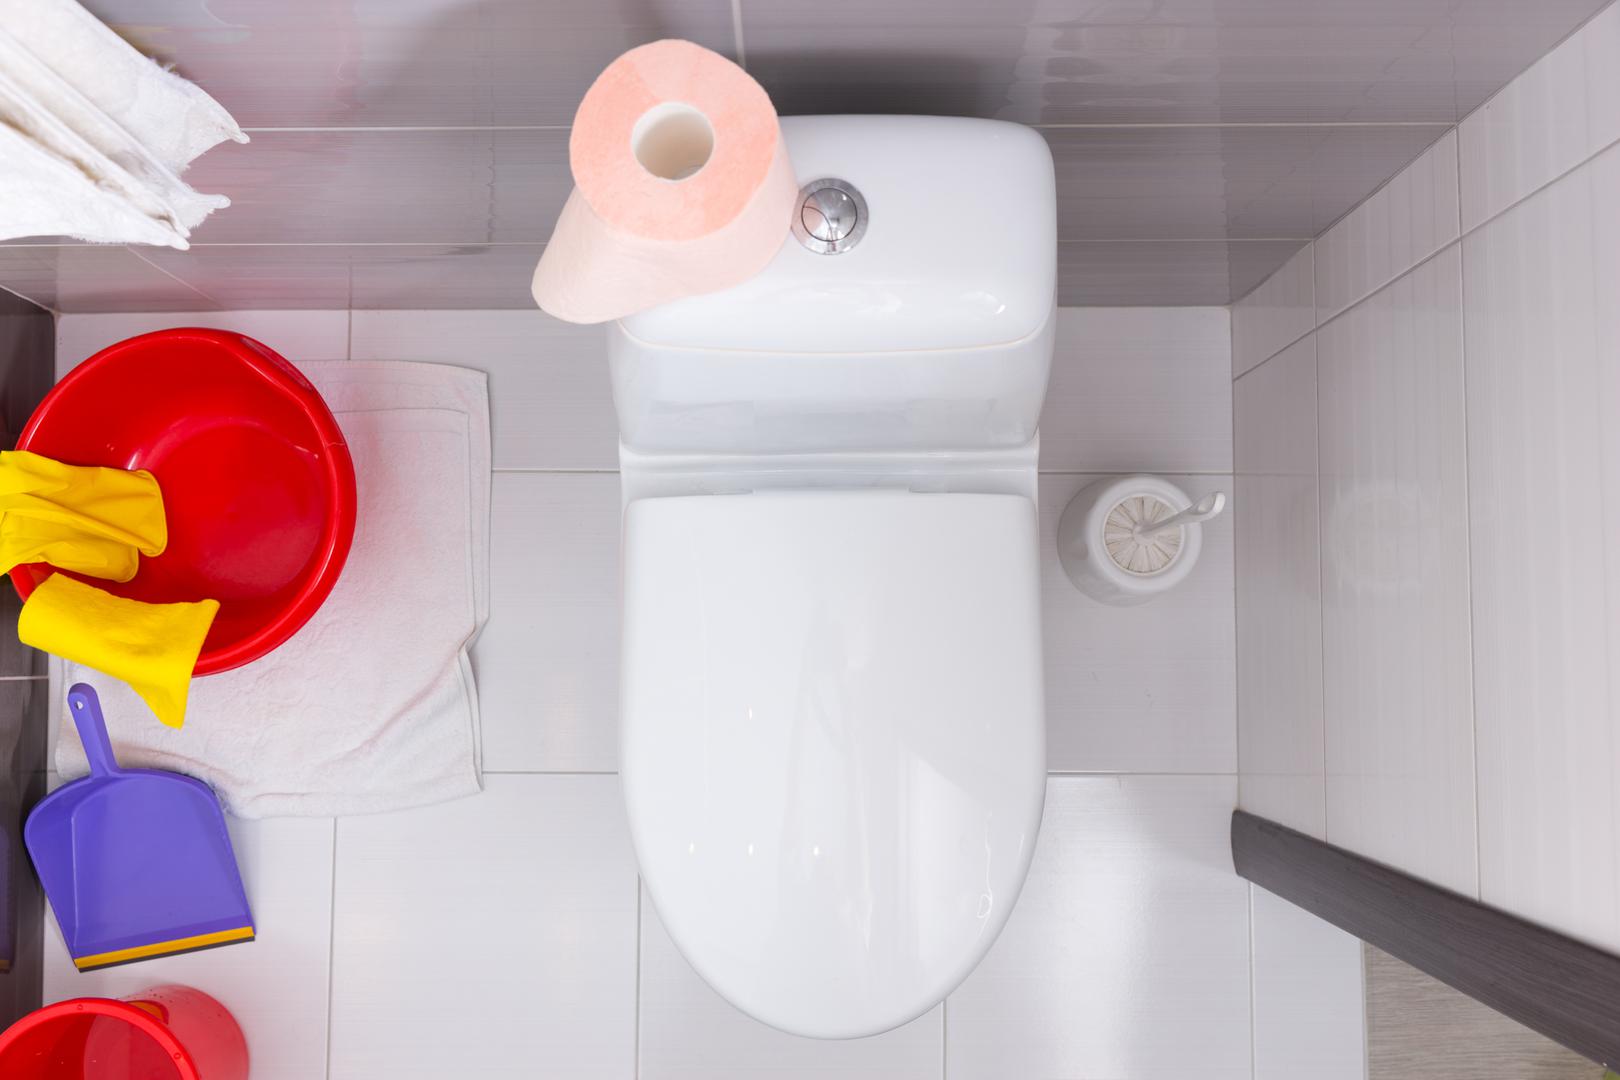 Ovo su stvari koje baš nikada ne smijete baciti u WC školjku. Iako je katkada najlakše smeće baciti u toalet, postoje stvari koje ne smijete nikada bacati u WC školjku. Zbog toga je dobro imati u kupaonici uvijek malu kantu za smeće.